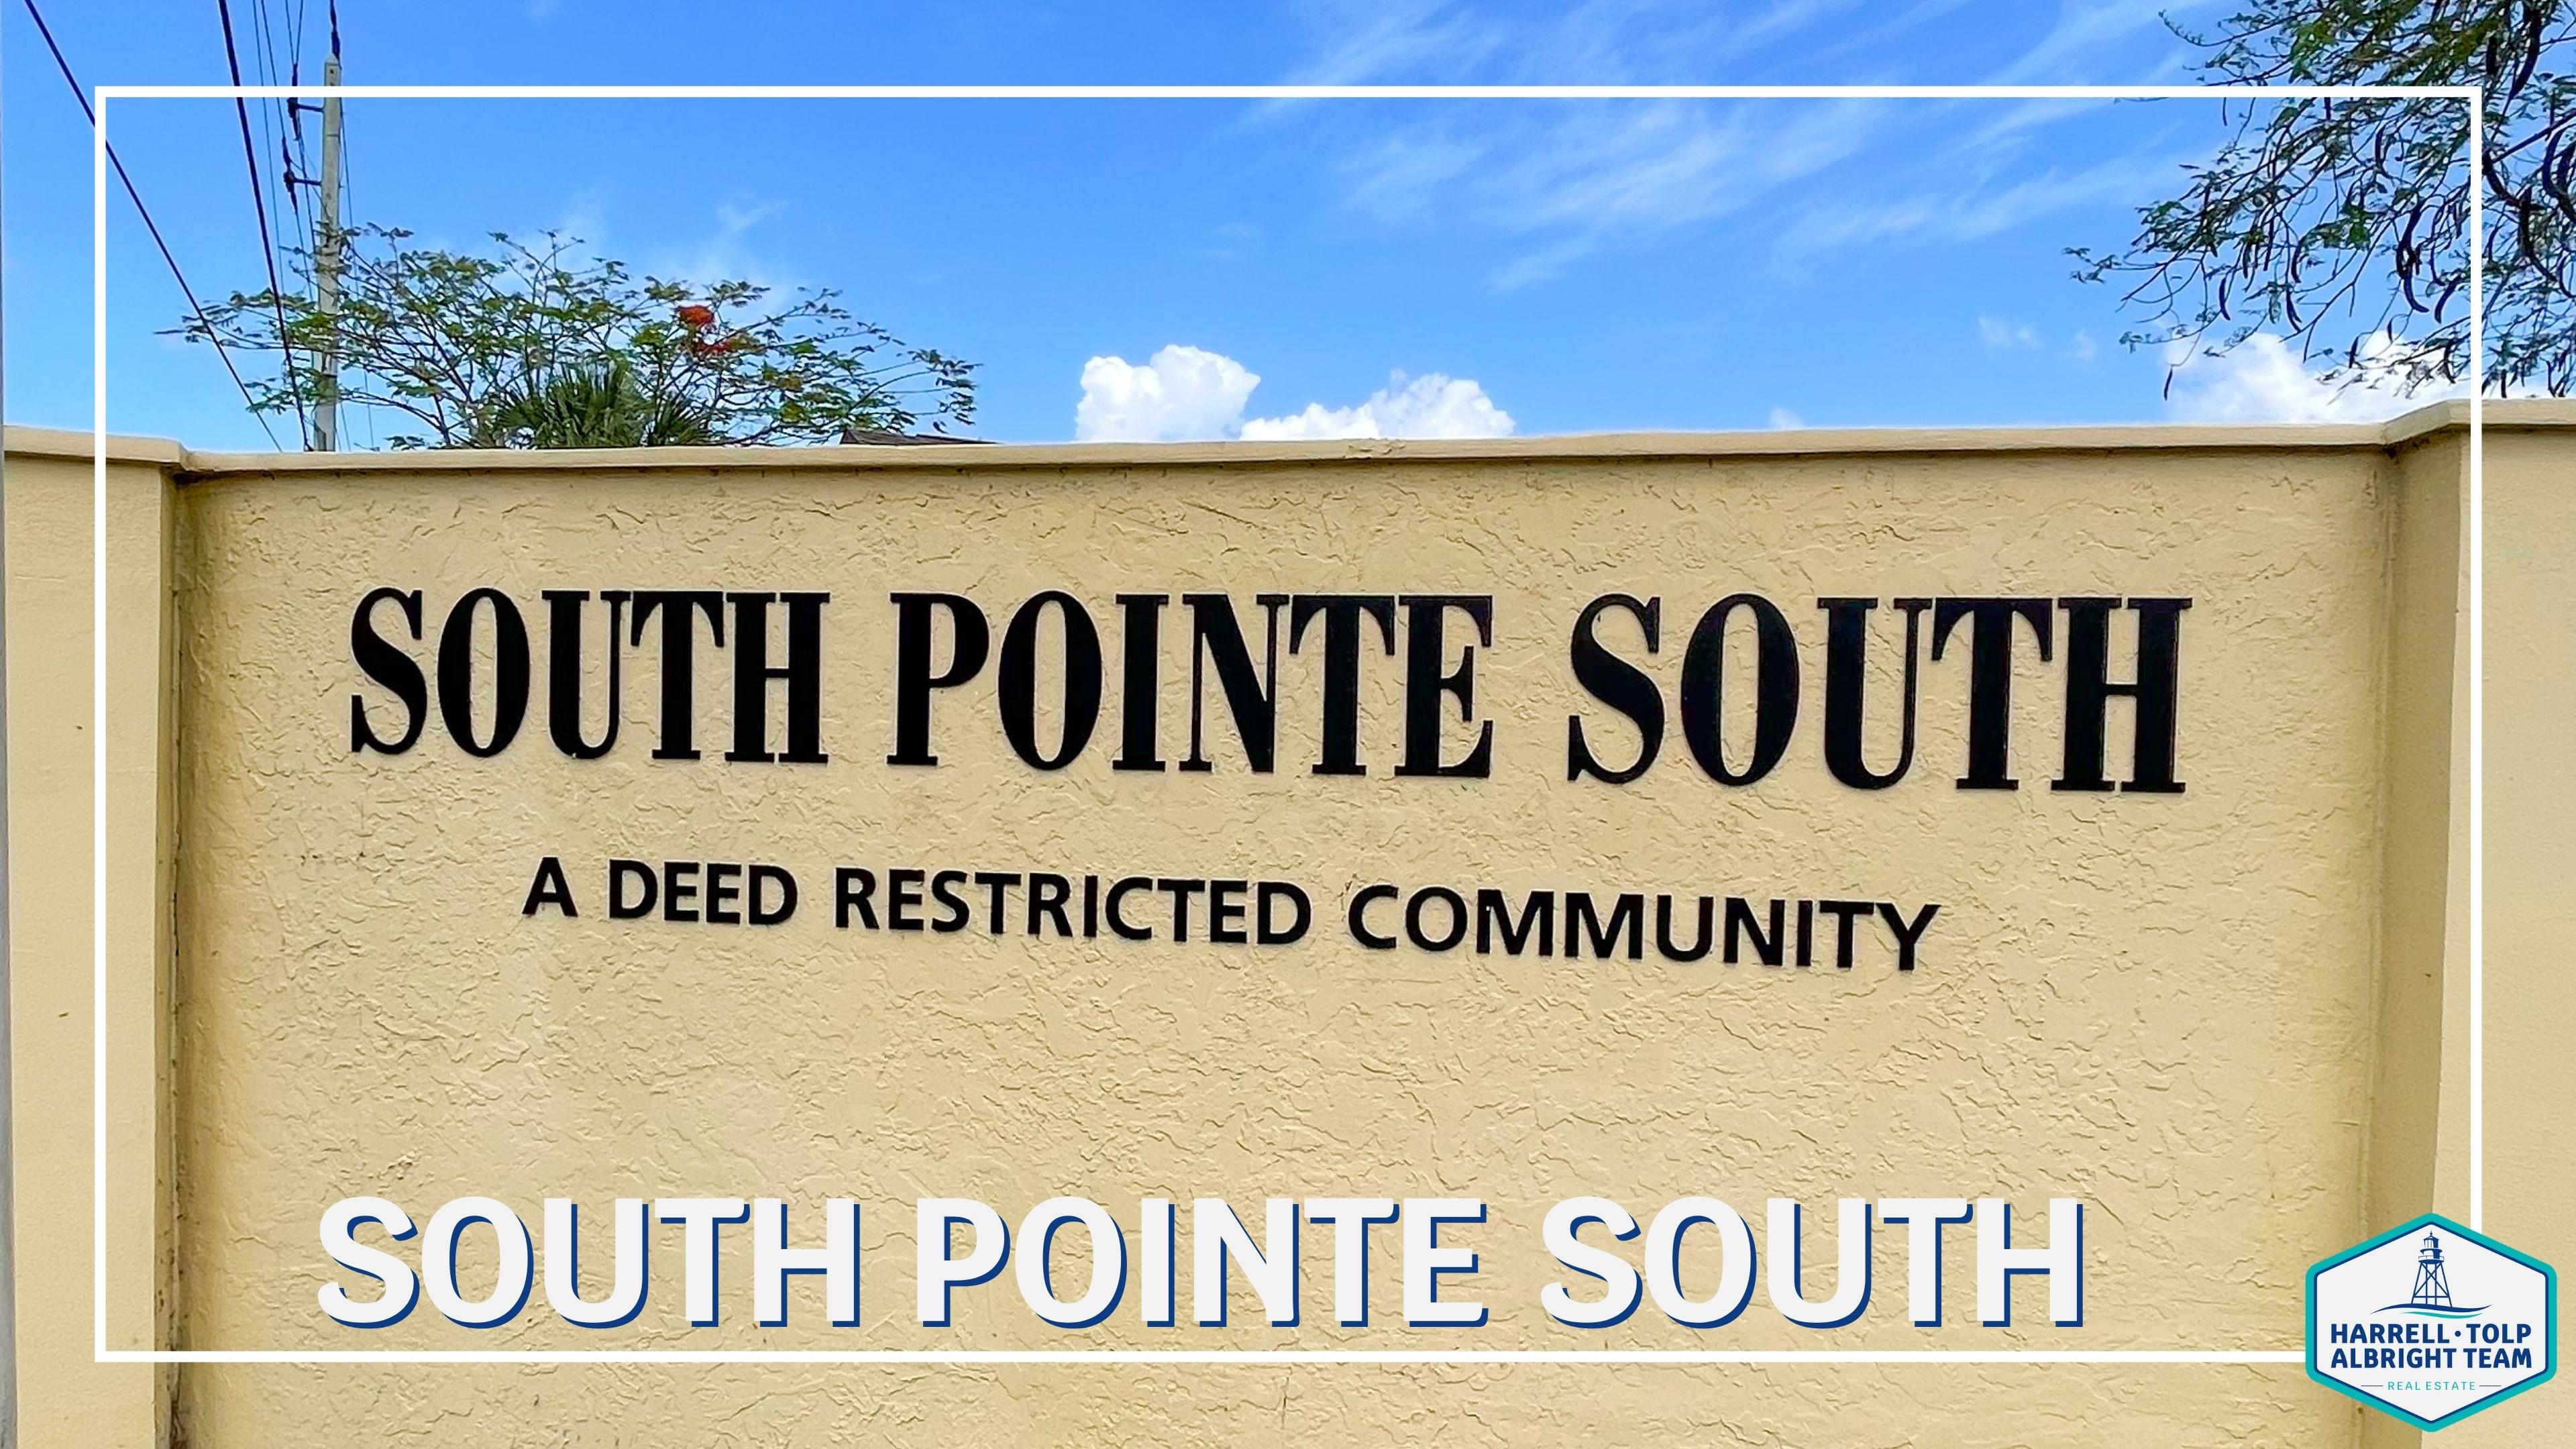 South Pointe South